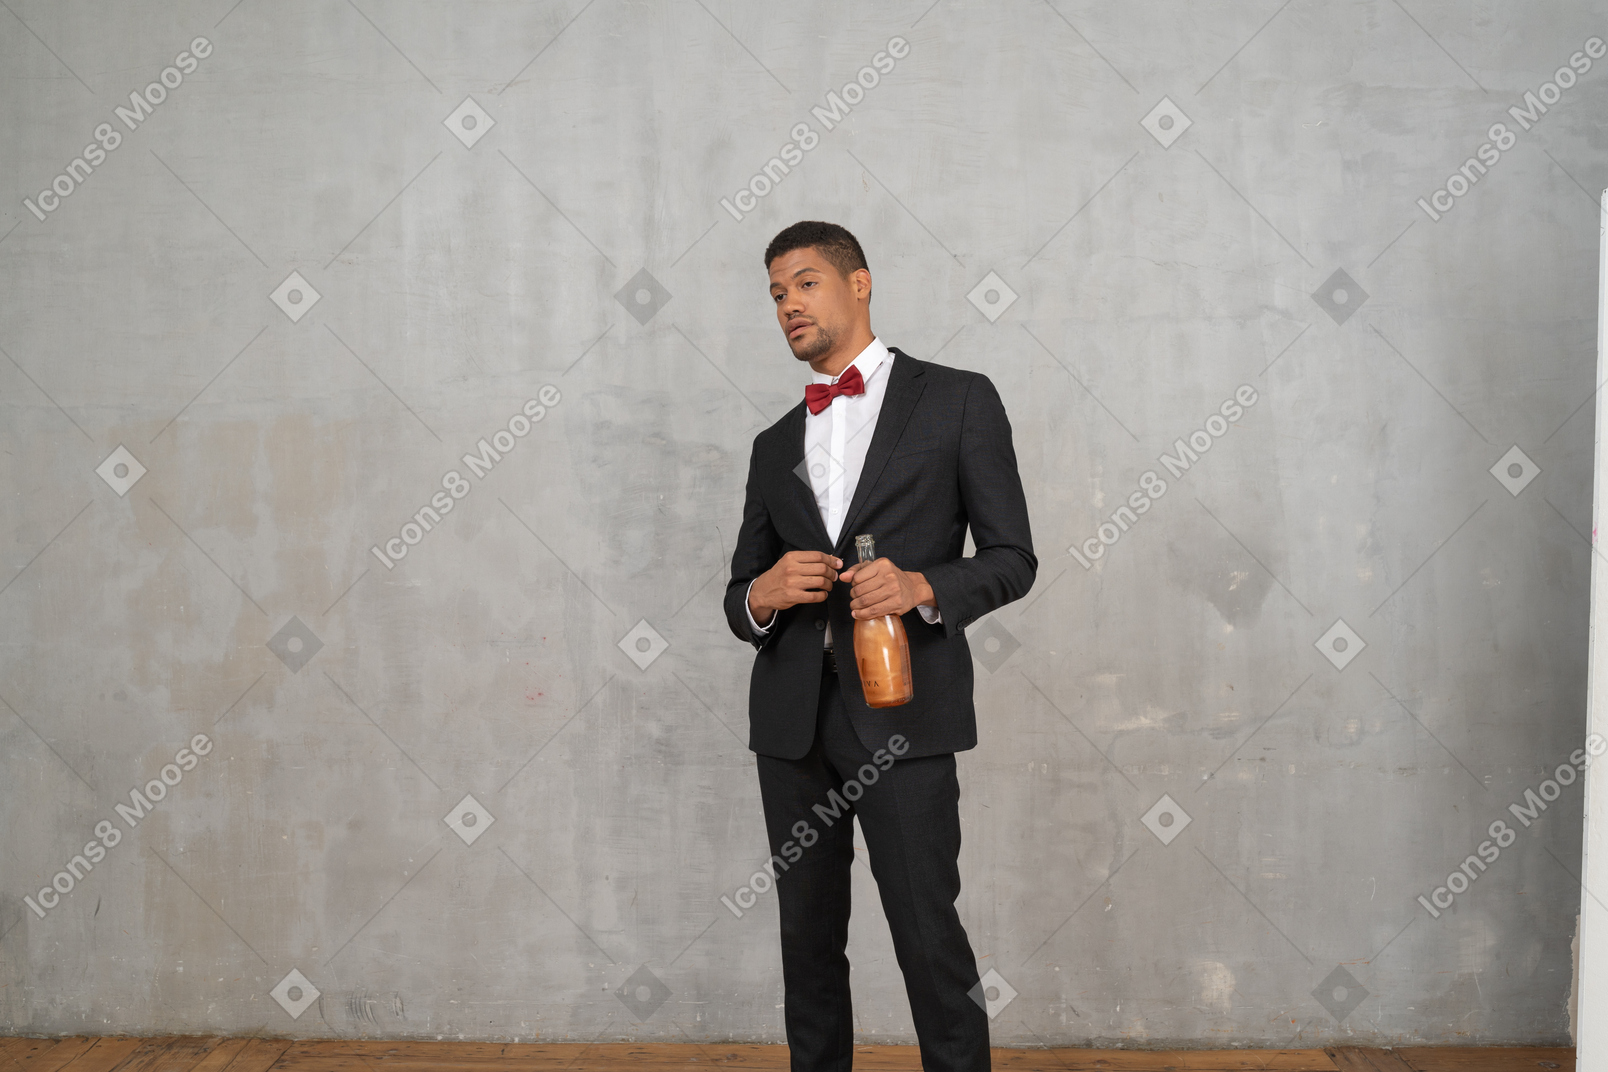 Hombre de traje y pajarita de pie con una botella en la mano